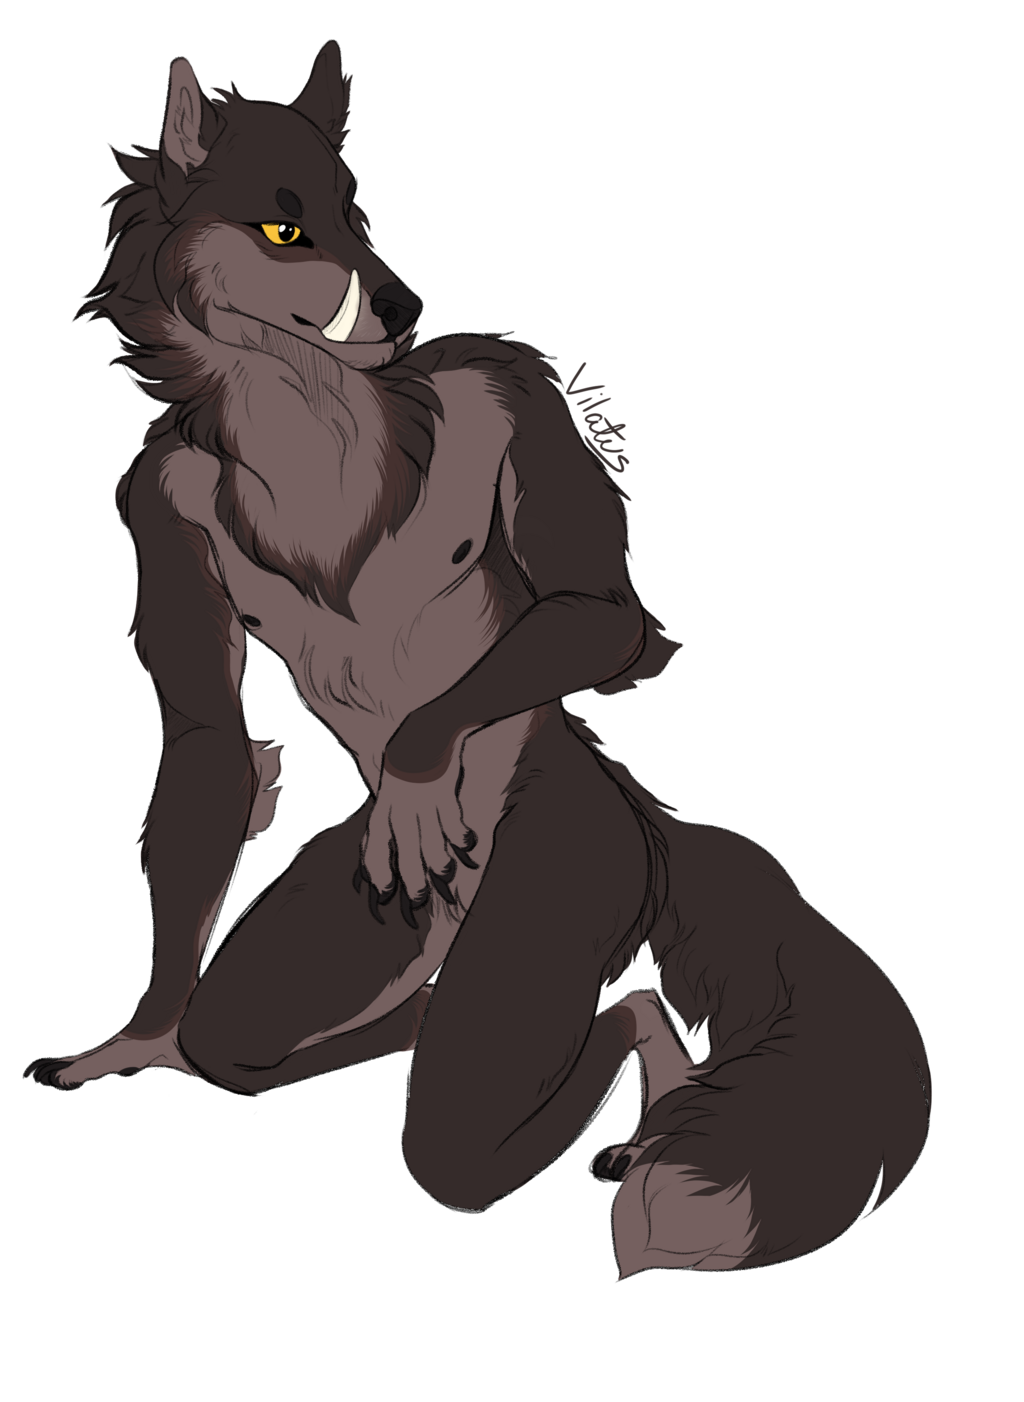 Most recent image: Werewolf OC